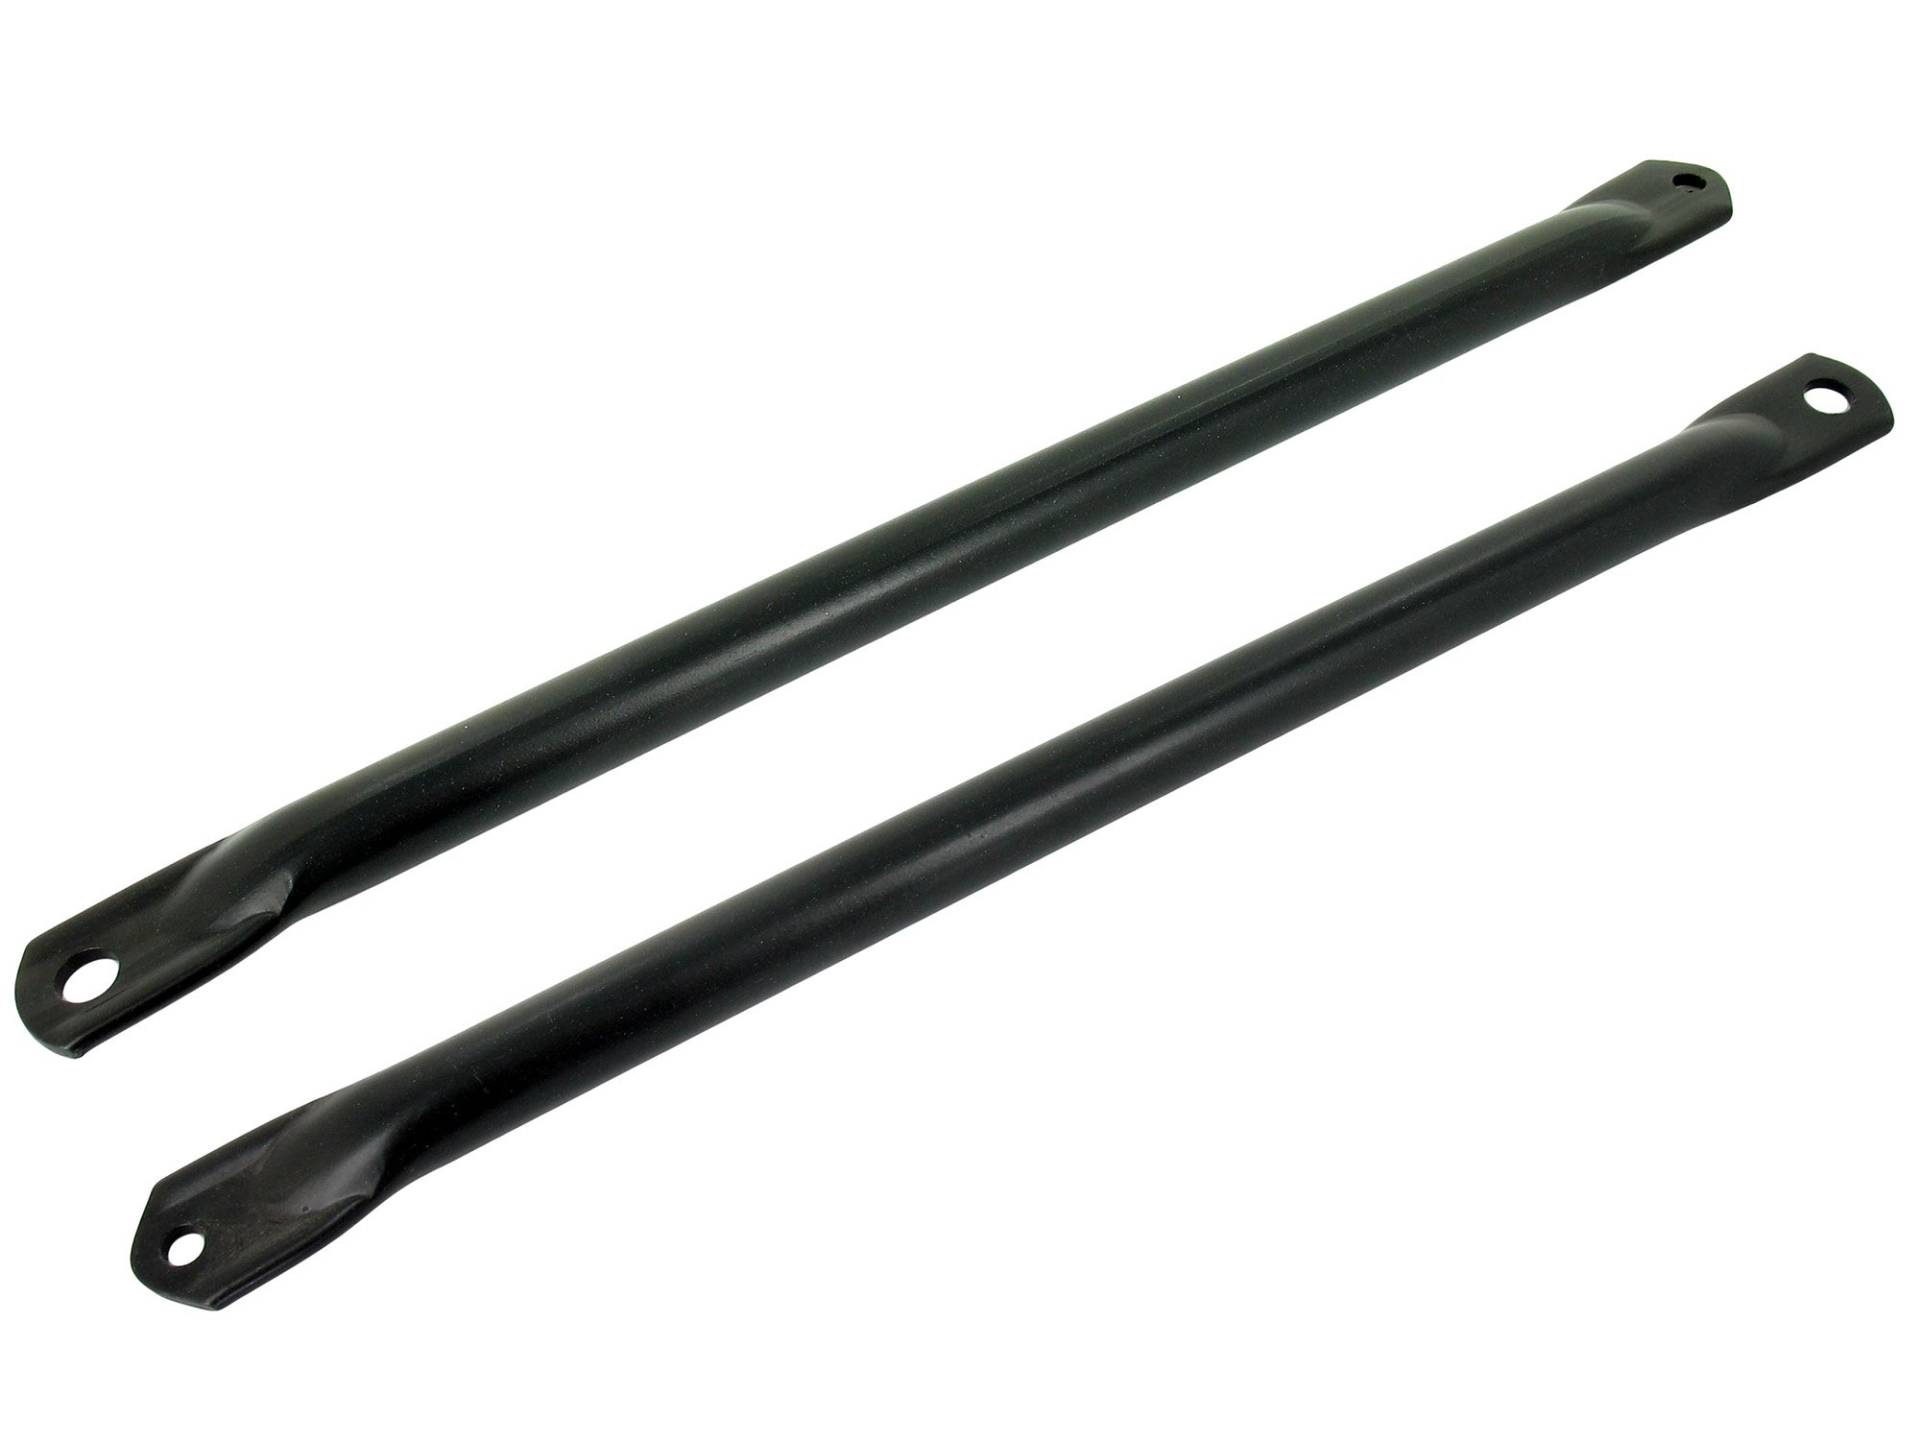 Paar Obergurtstützstreben ( 2 Stück ) - schwarz pulverbeschichtet - S50N, S51N von MZA